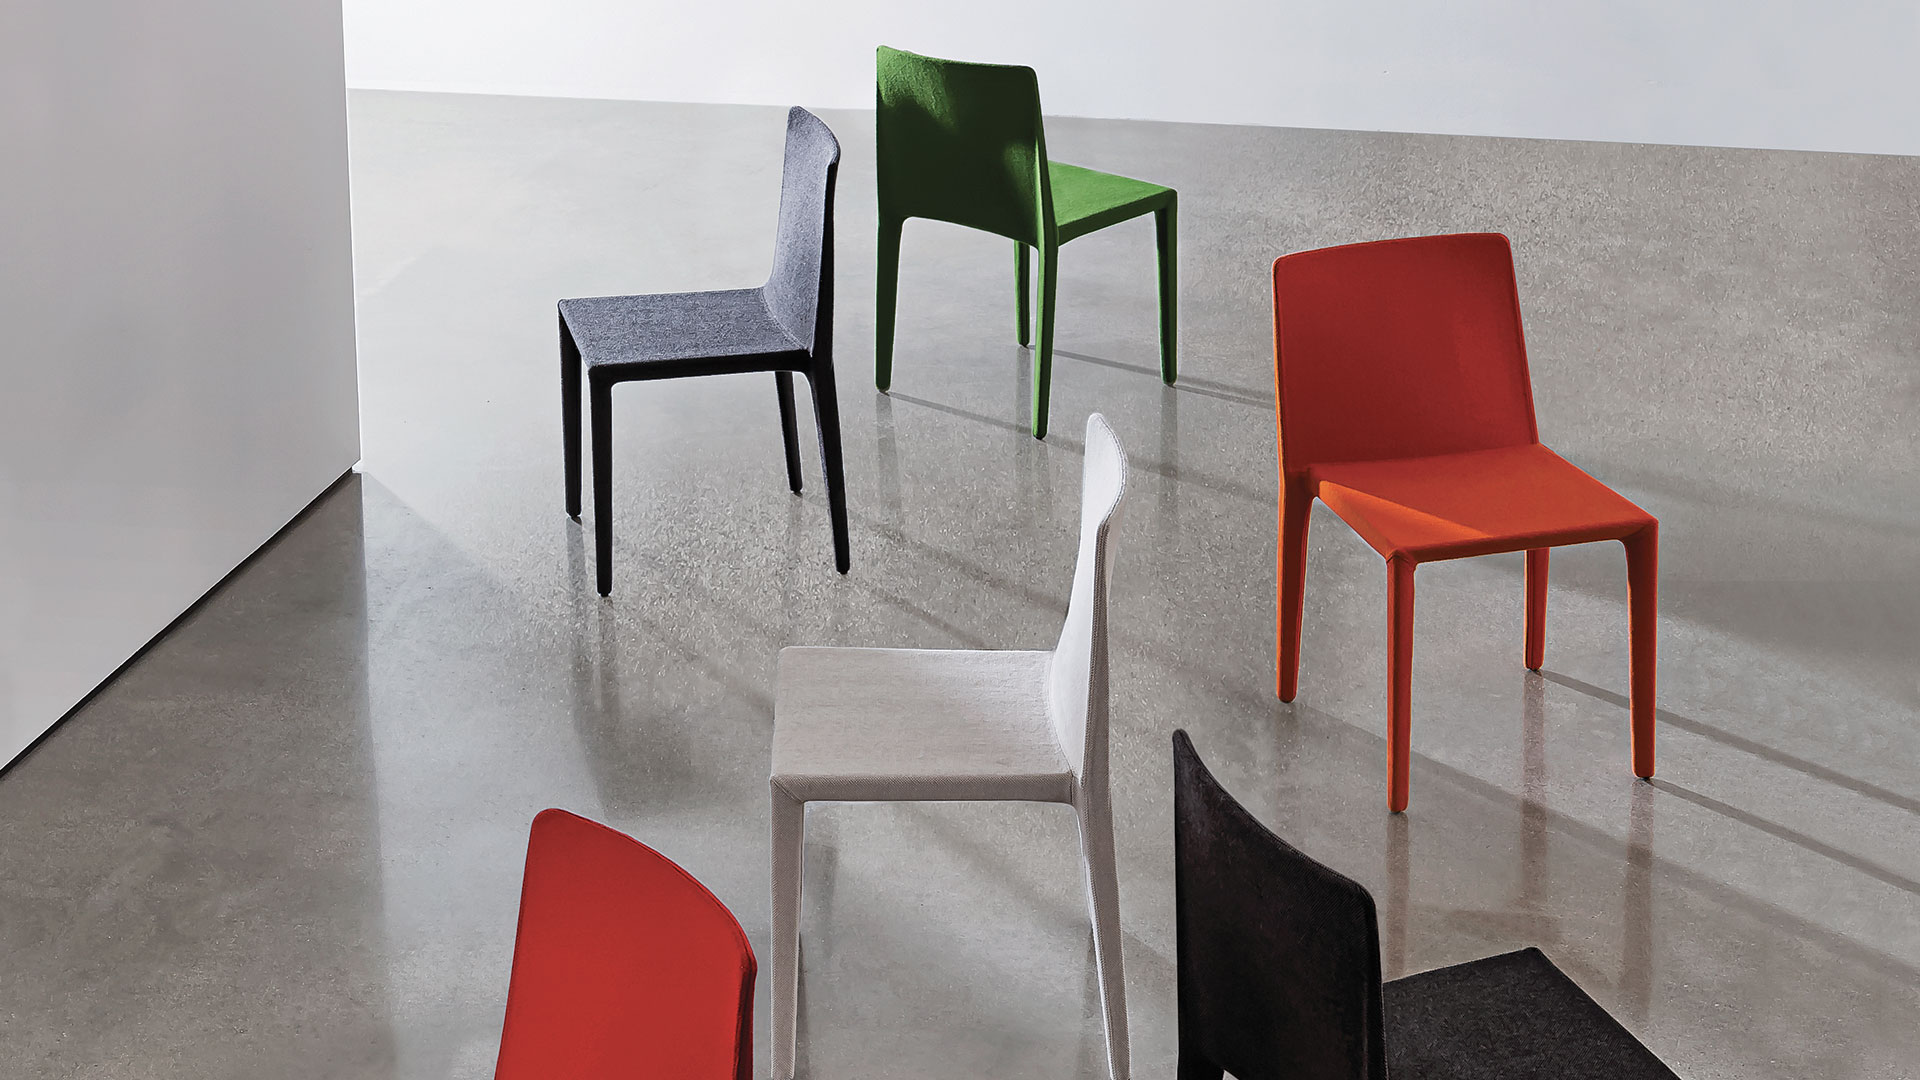 Quattro sedie senza braccioli con struttura in poliuretano rivestita in tessuto colore scuro, verde, rosso e bianco